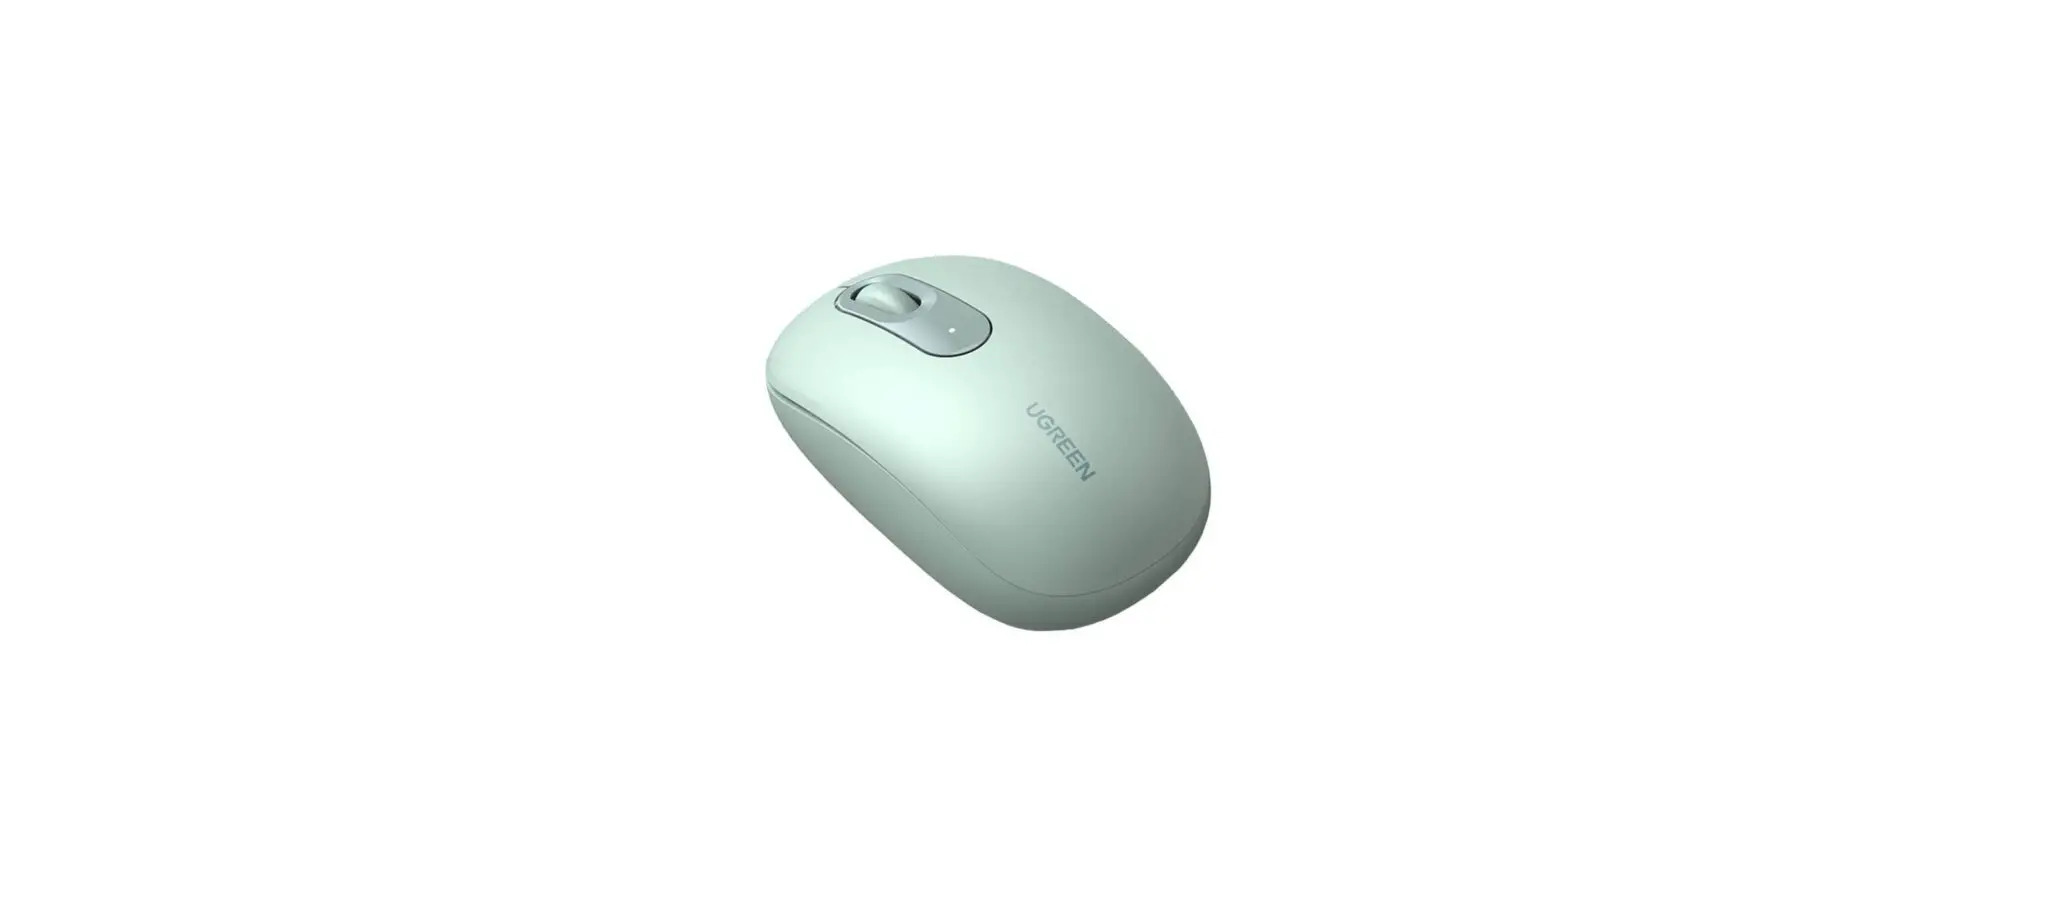 MU105 2.4G Wireless Mouse